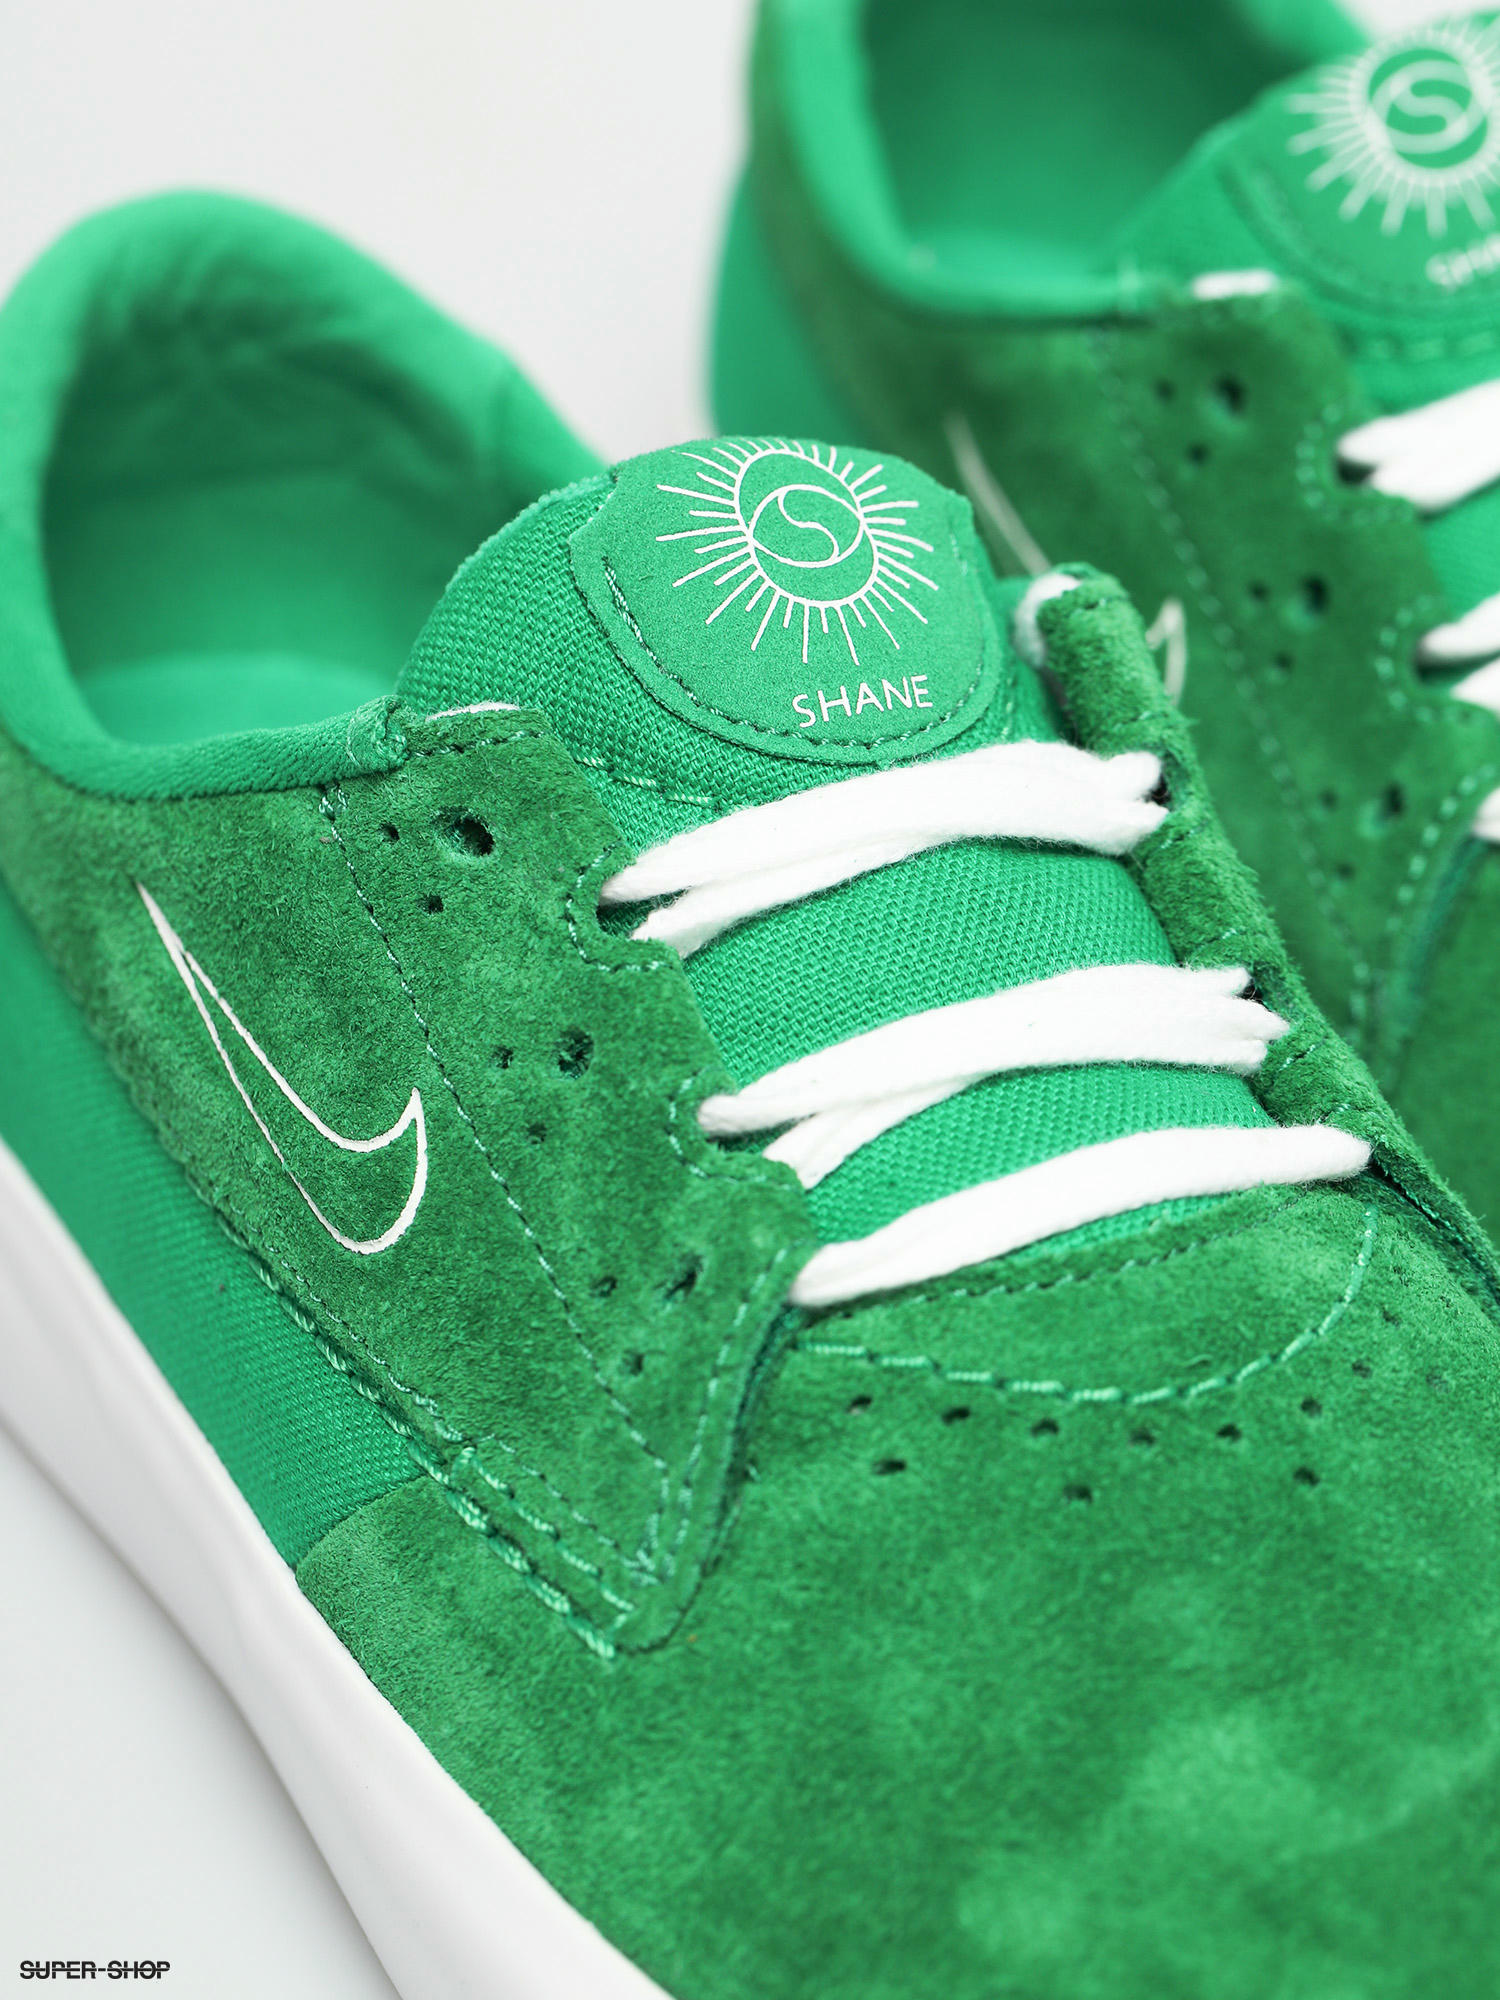 lettuce boycott count up Nike SB Shane Shoes (lucky green/white lucky green white)